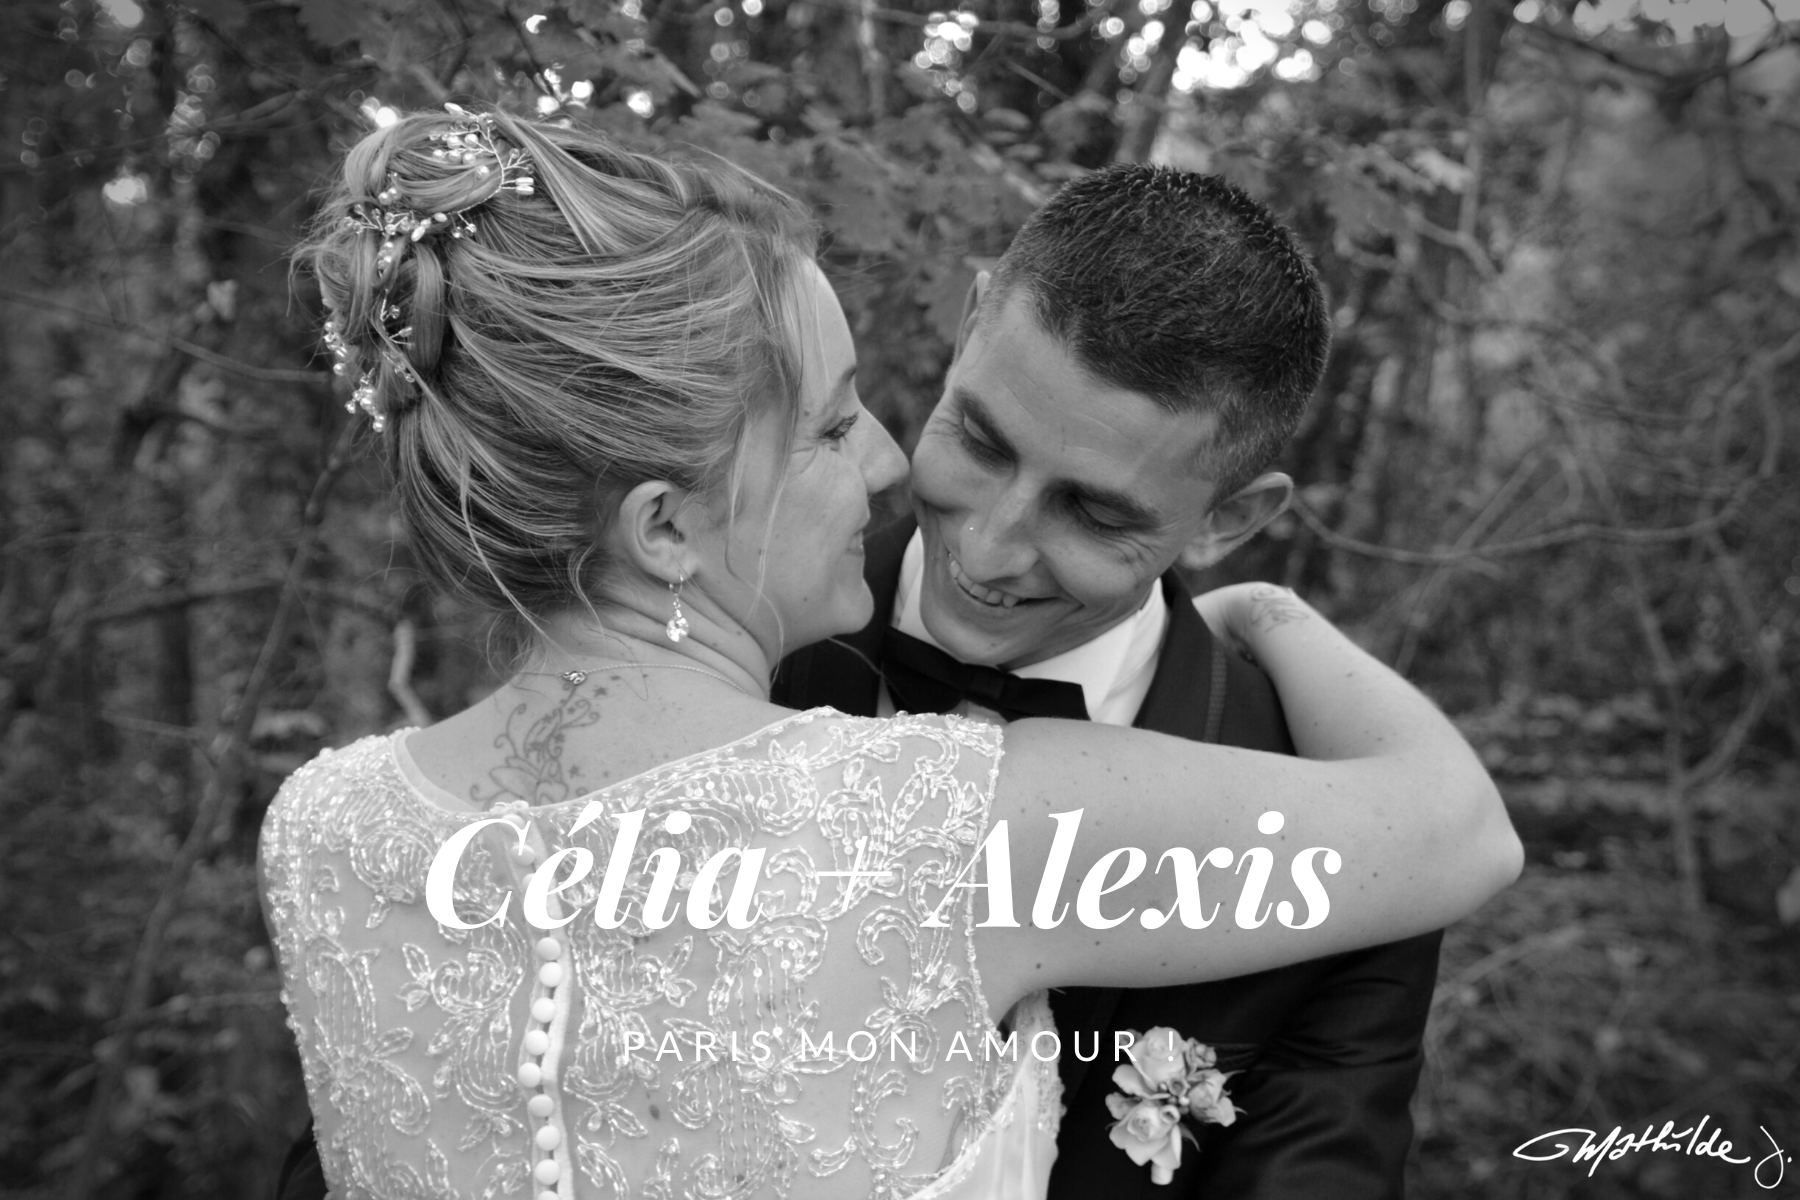 Reportage photos mariage thème paris - Hera Mariage Wedding Planner - Auvergne - Puy de Dôme - Clermont-Ferrand - Allier - Haute-Loire - Cantal